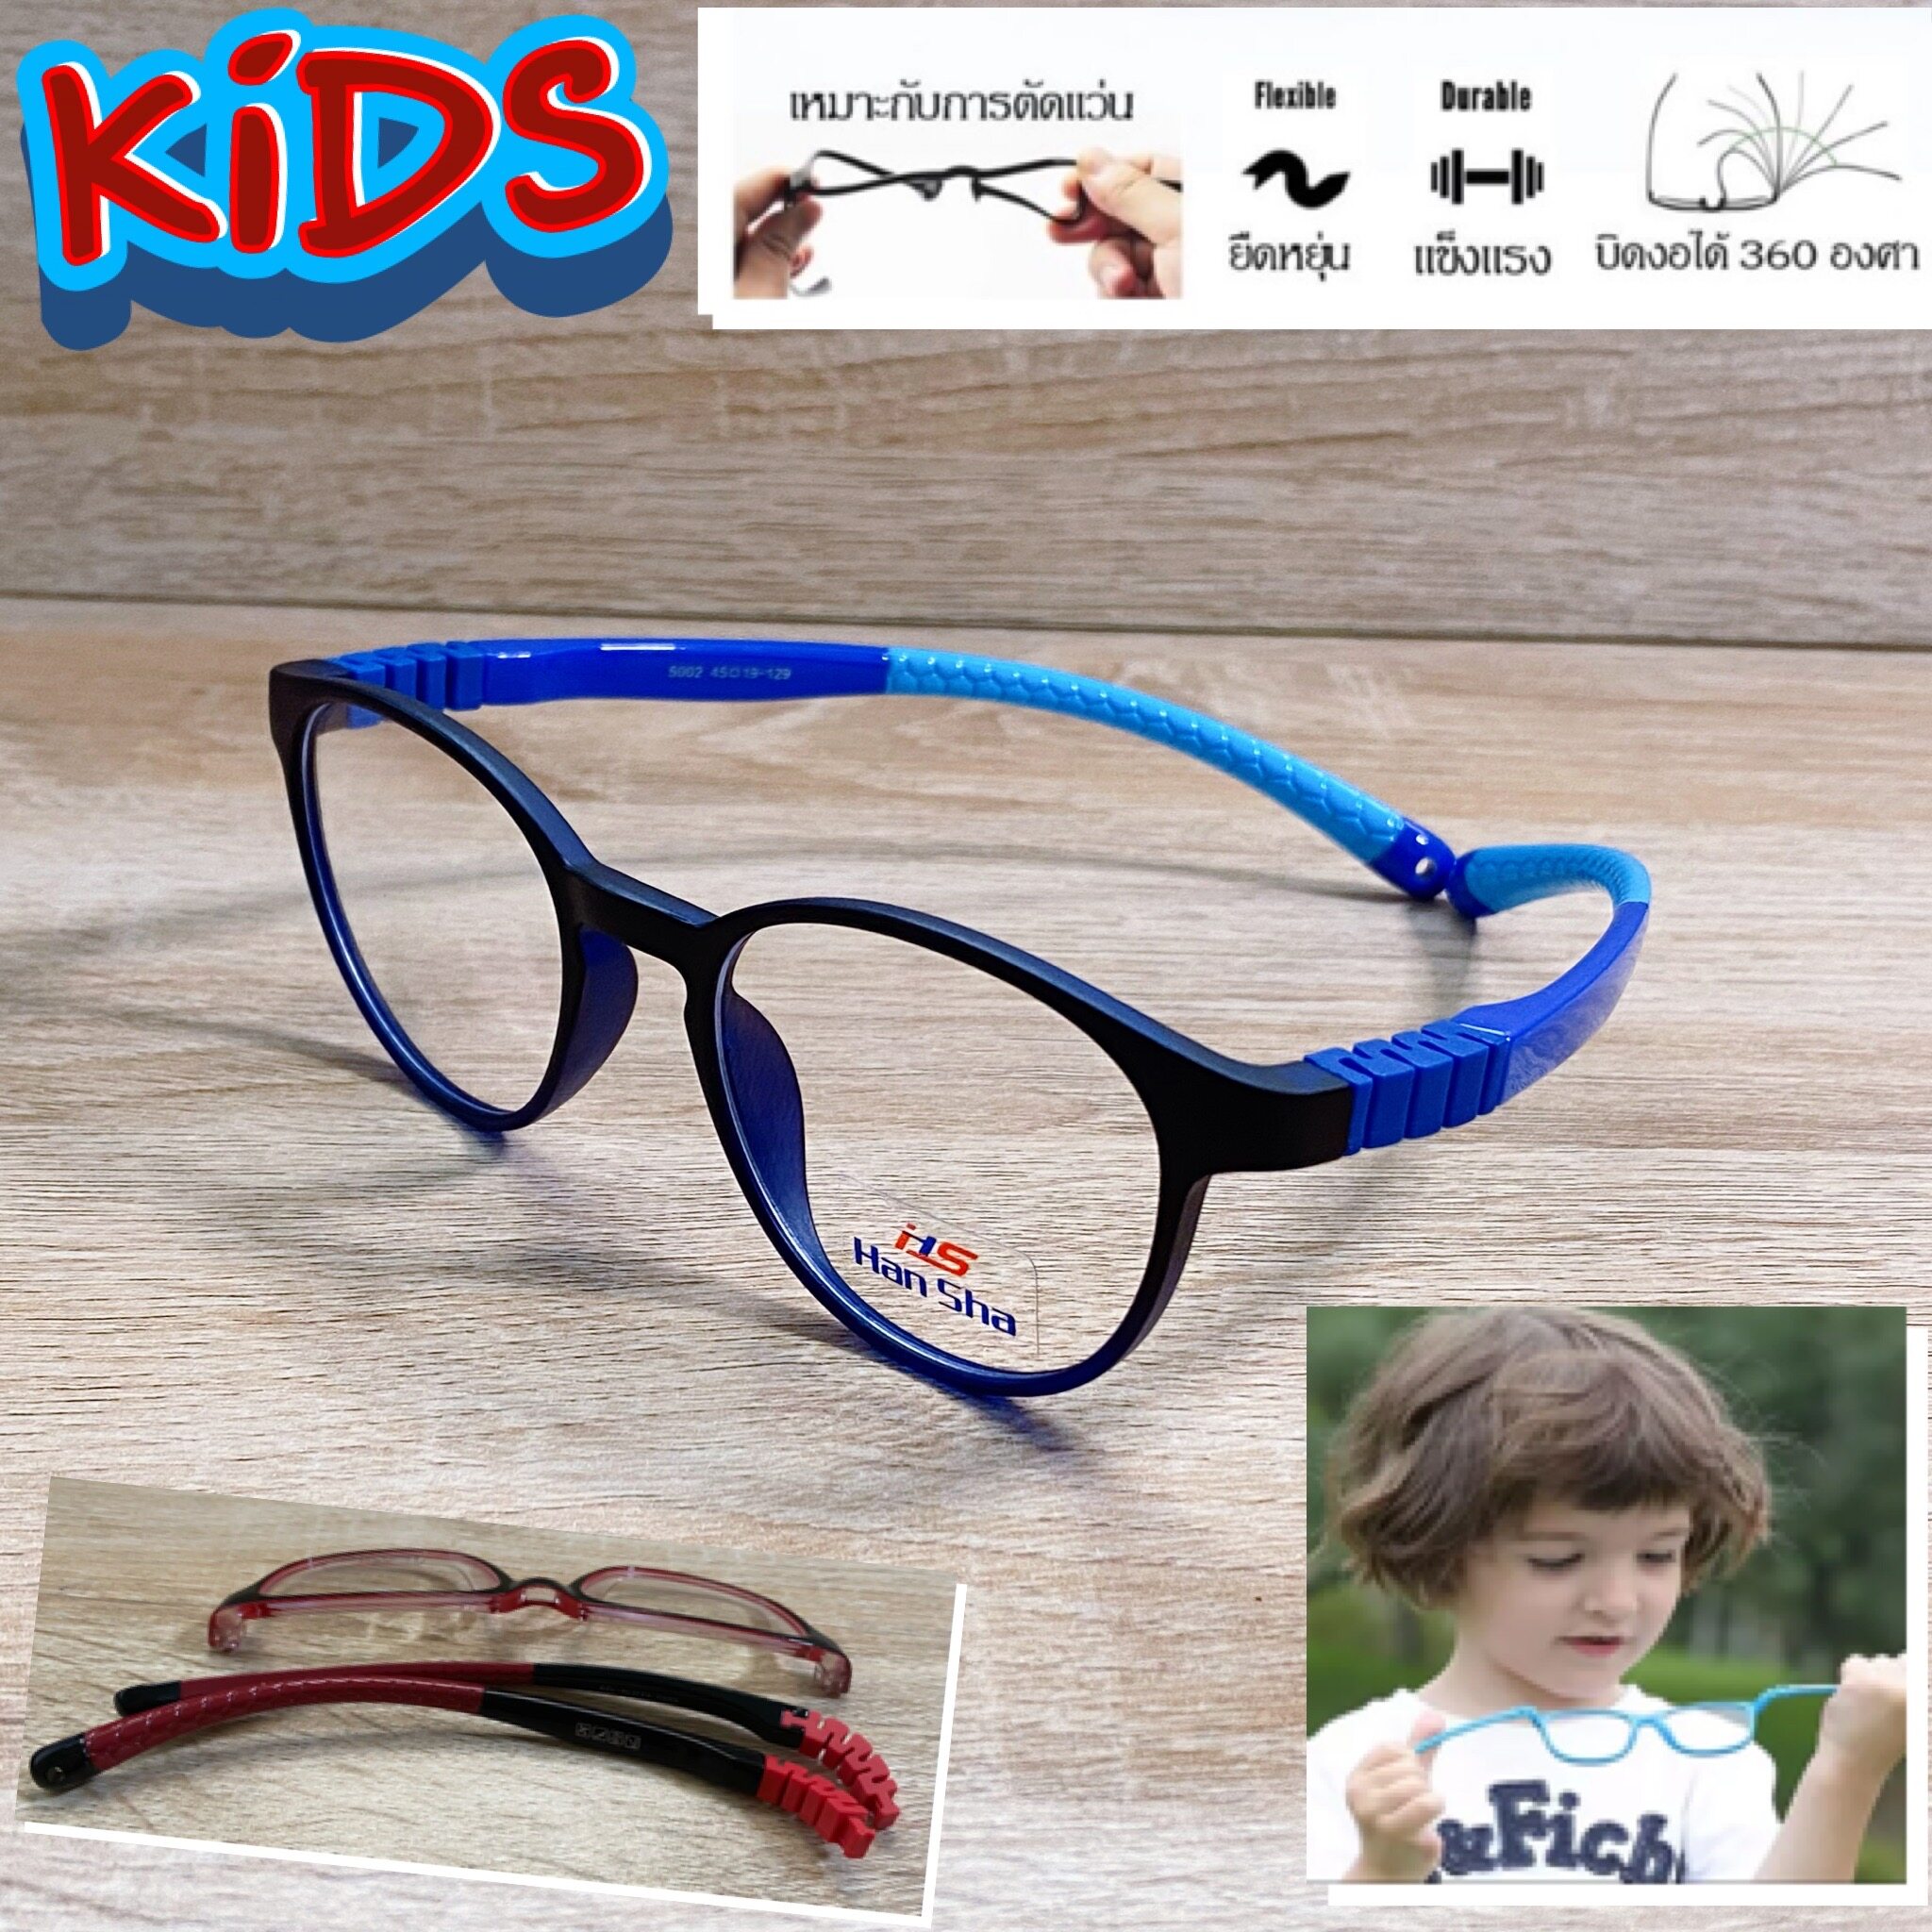 แว่นตาเด็ก กรอบแว่นตาเด็ก สำหรับตัดเลนส์ แว่นตา Han Sha รุ่น 5002 สีดำตัดฟ้า ขาไม่ใช้น็อต ยืดหยุ่น ถอดขาเปลี่ยนได้ วัสดุ TR 90 เบา ไม่แตกหัก